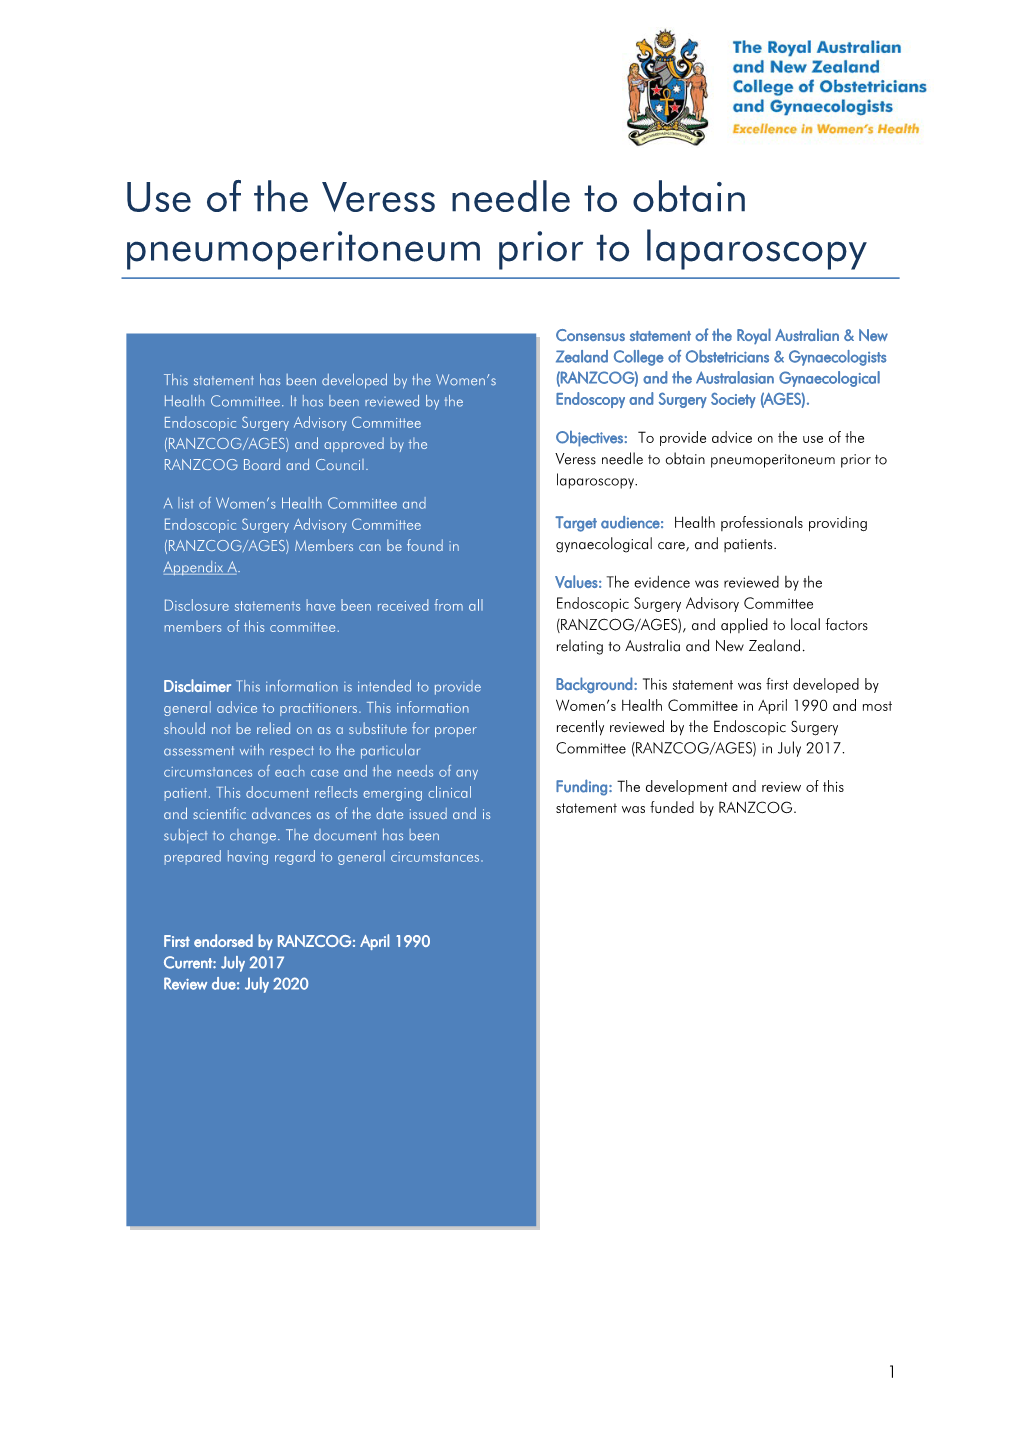 Use of the Veress Needle to Obtain Pneumoperitoneum Prior to Laparoscopy